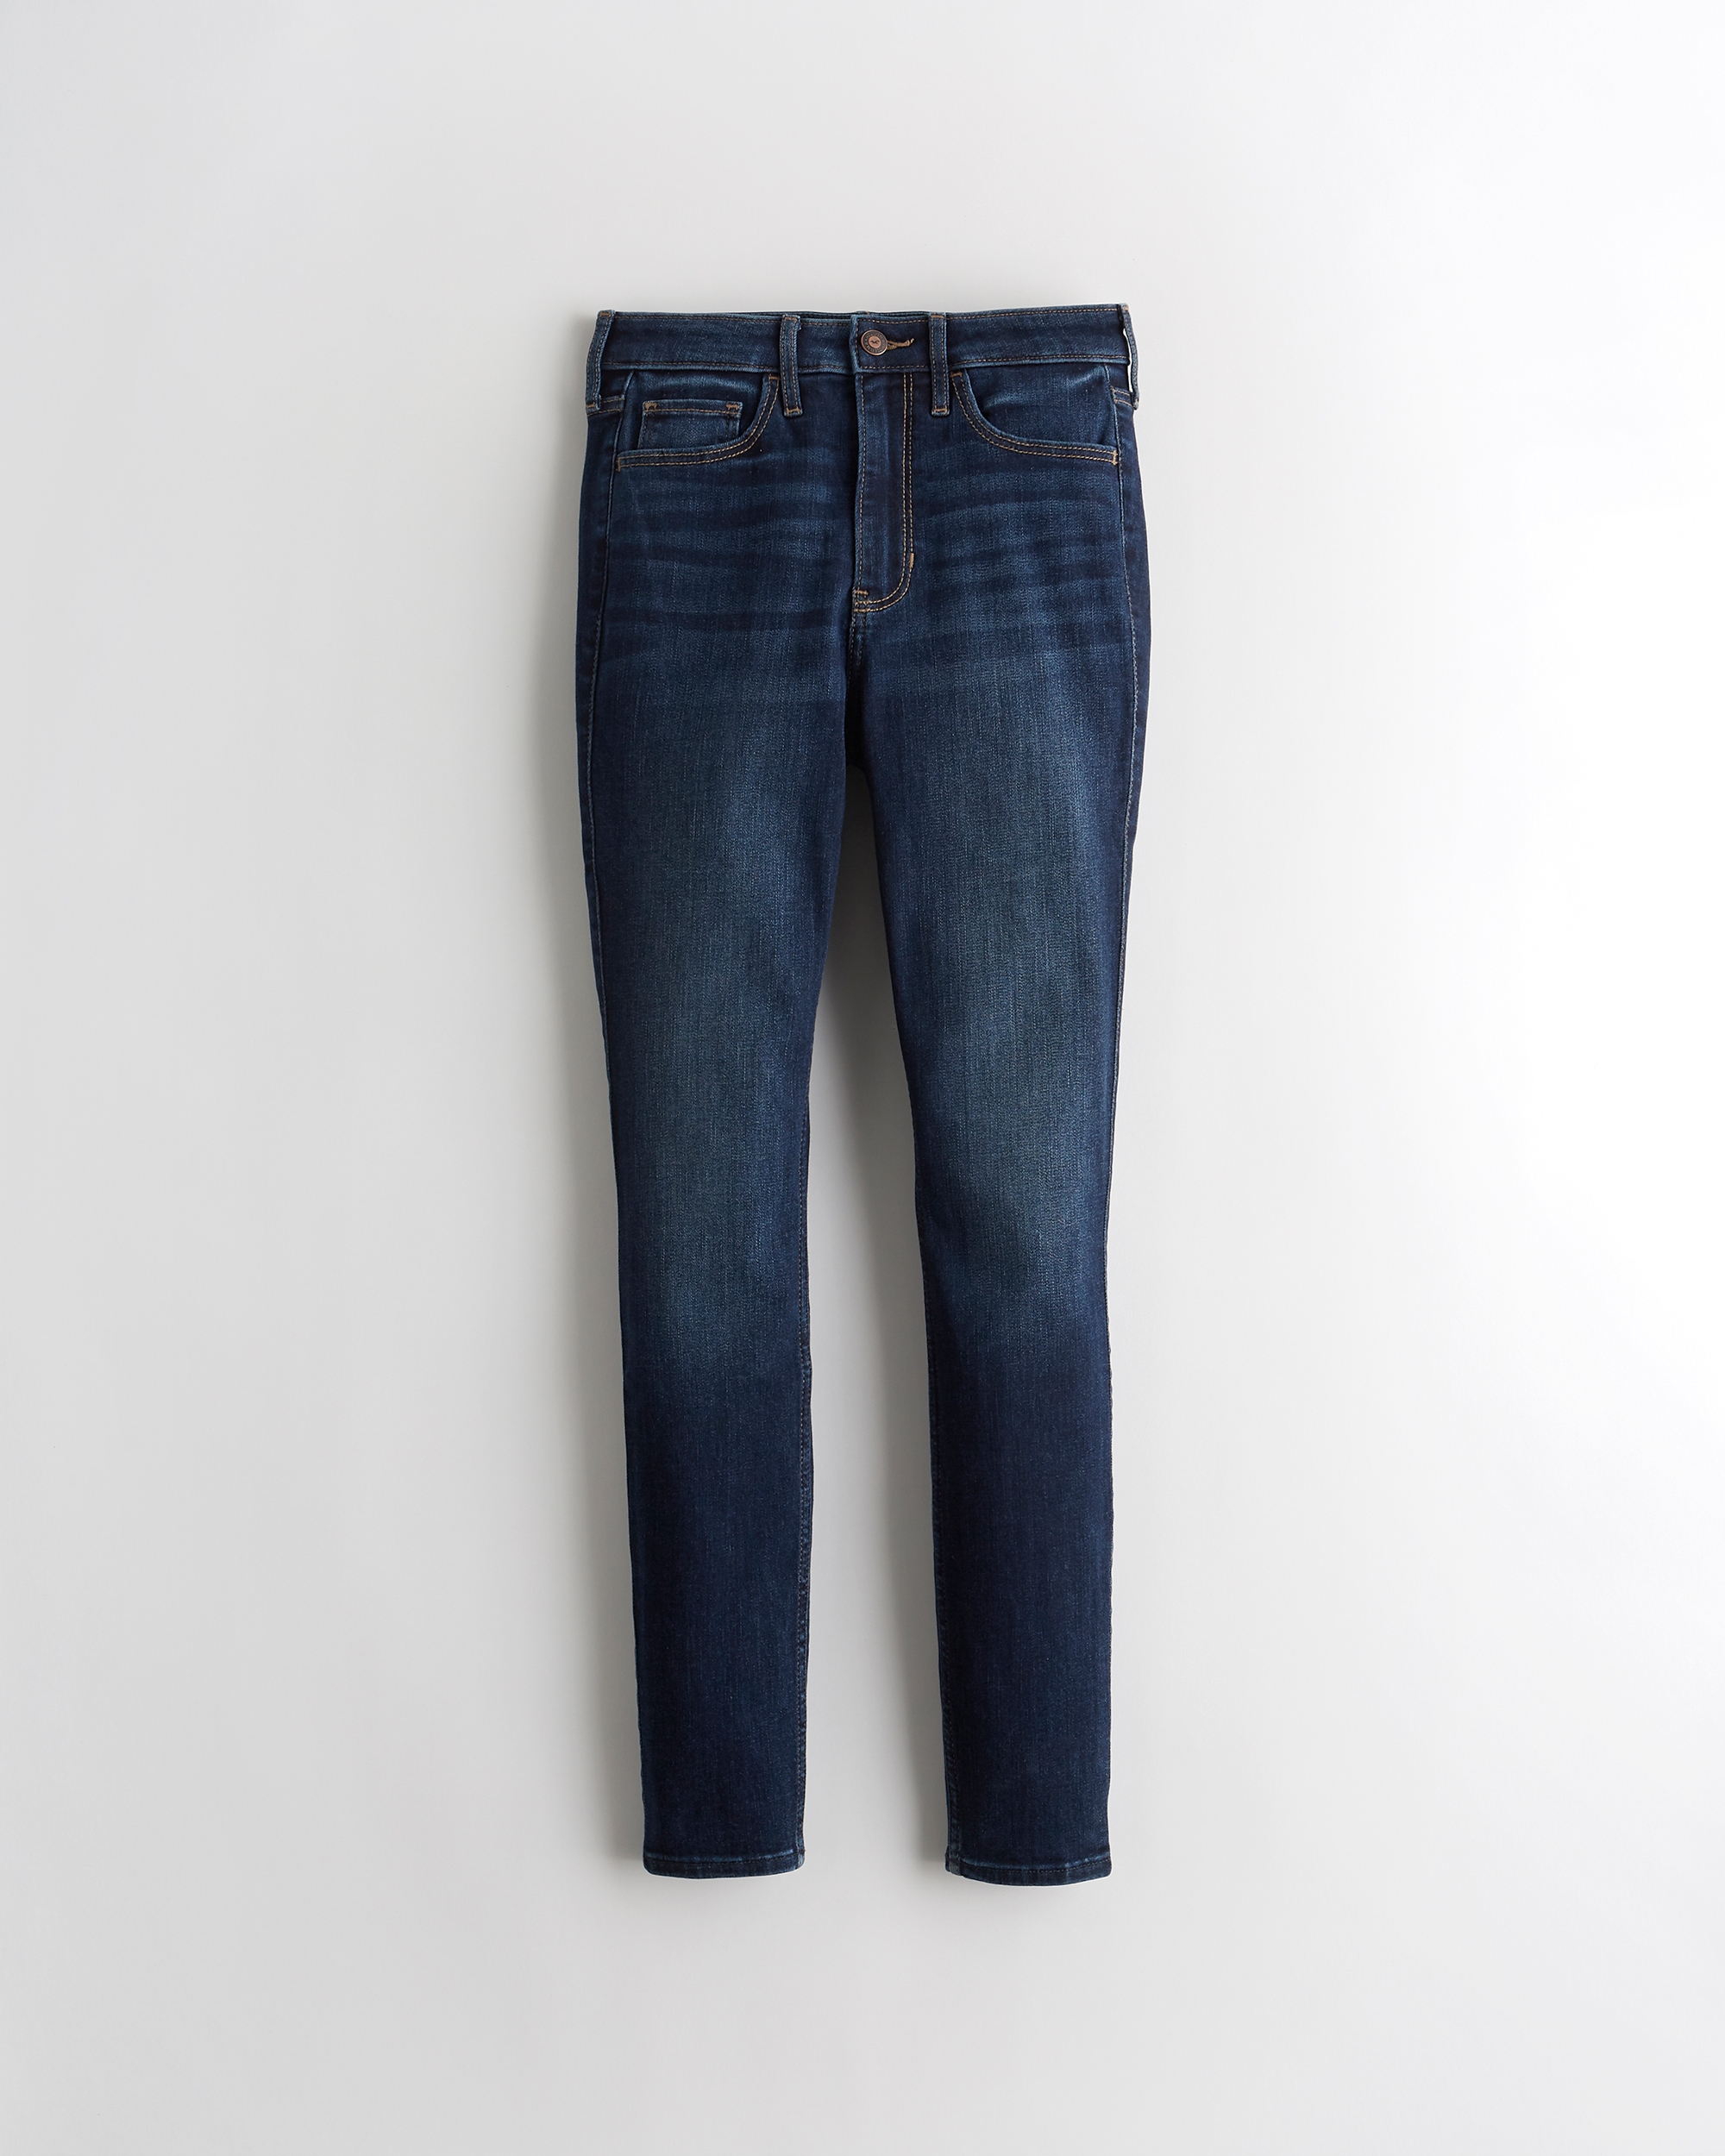 hollister jeans pocket design